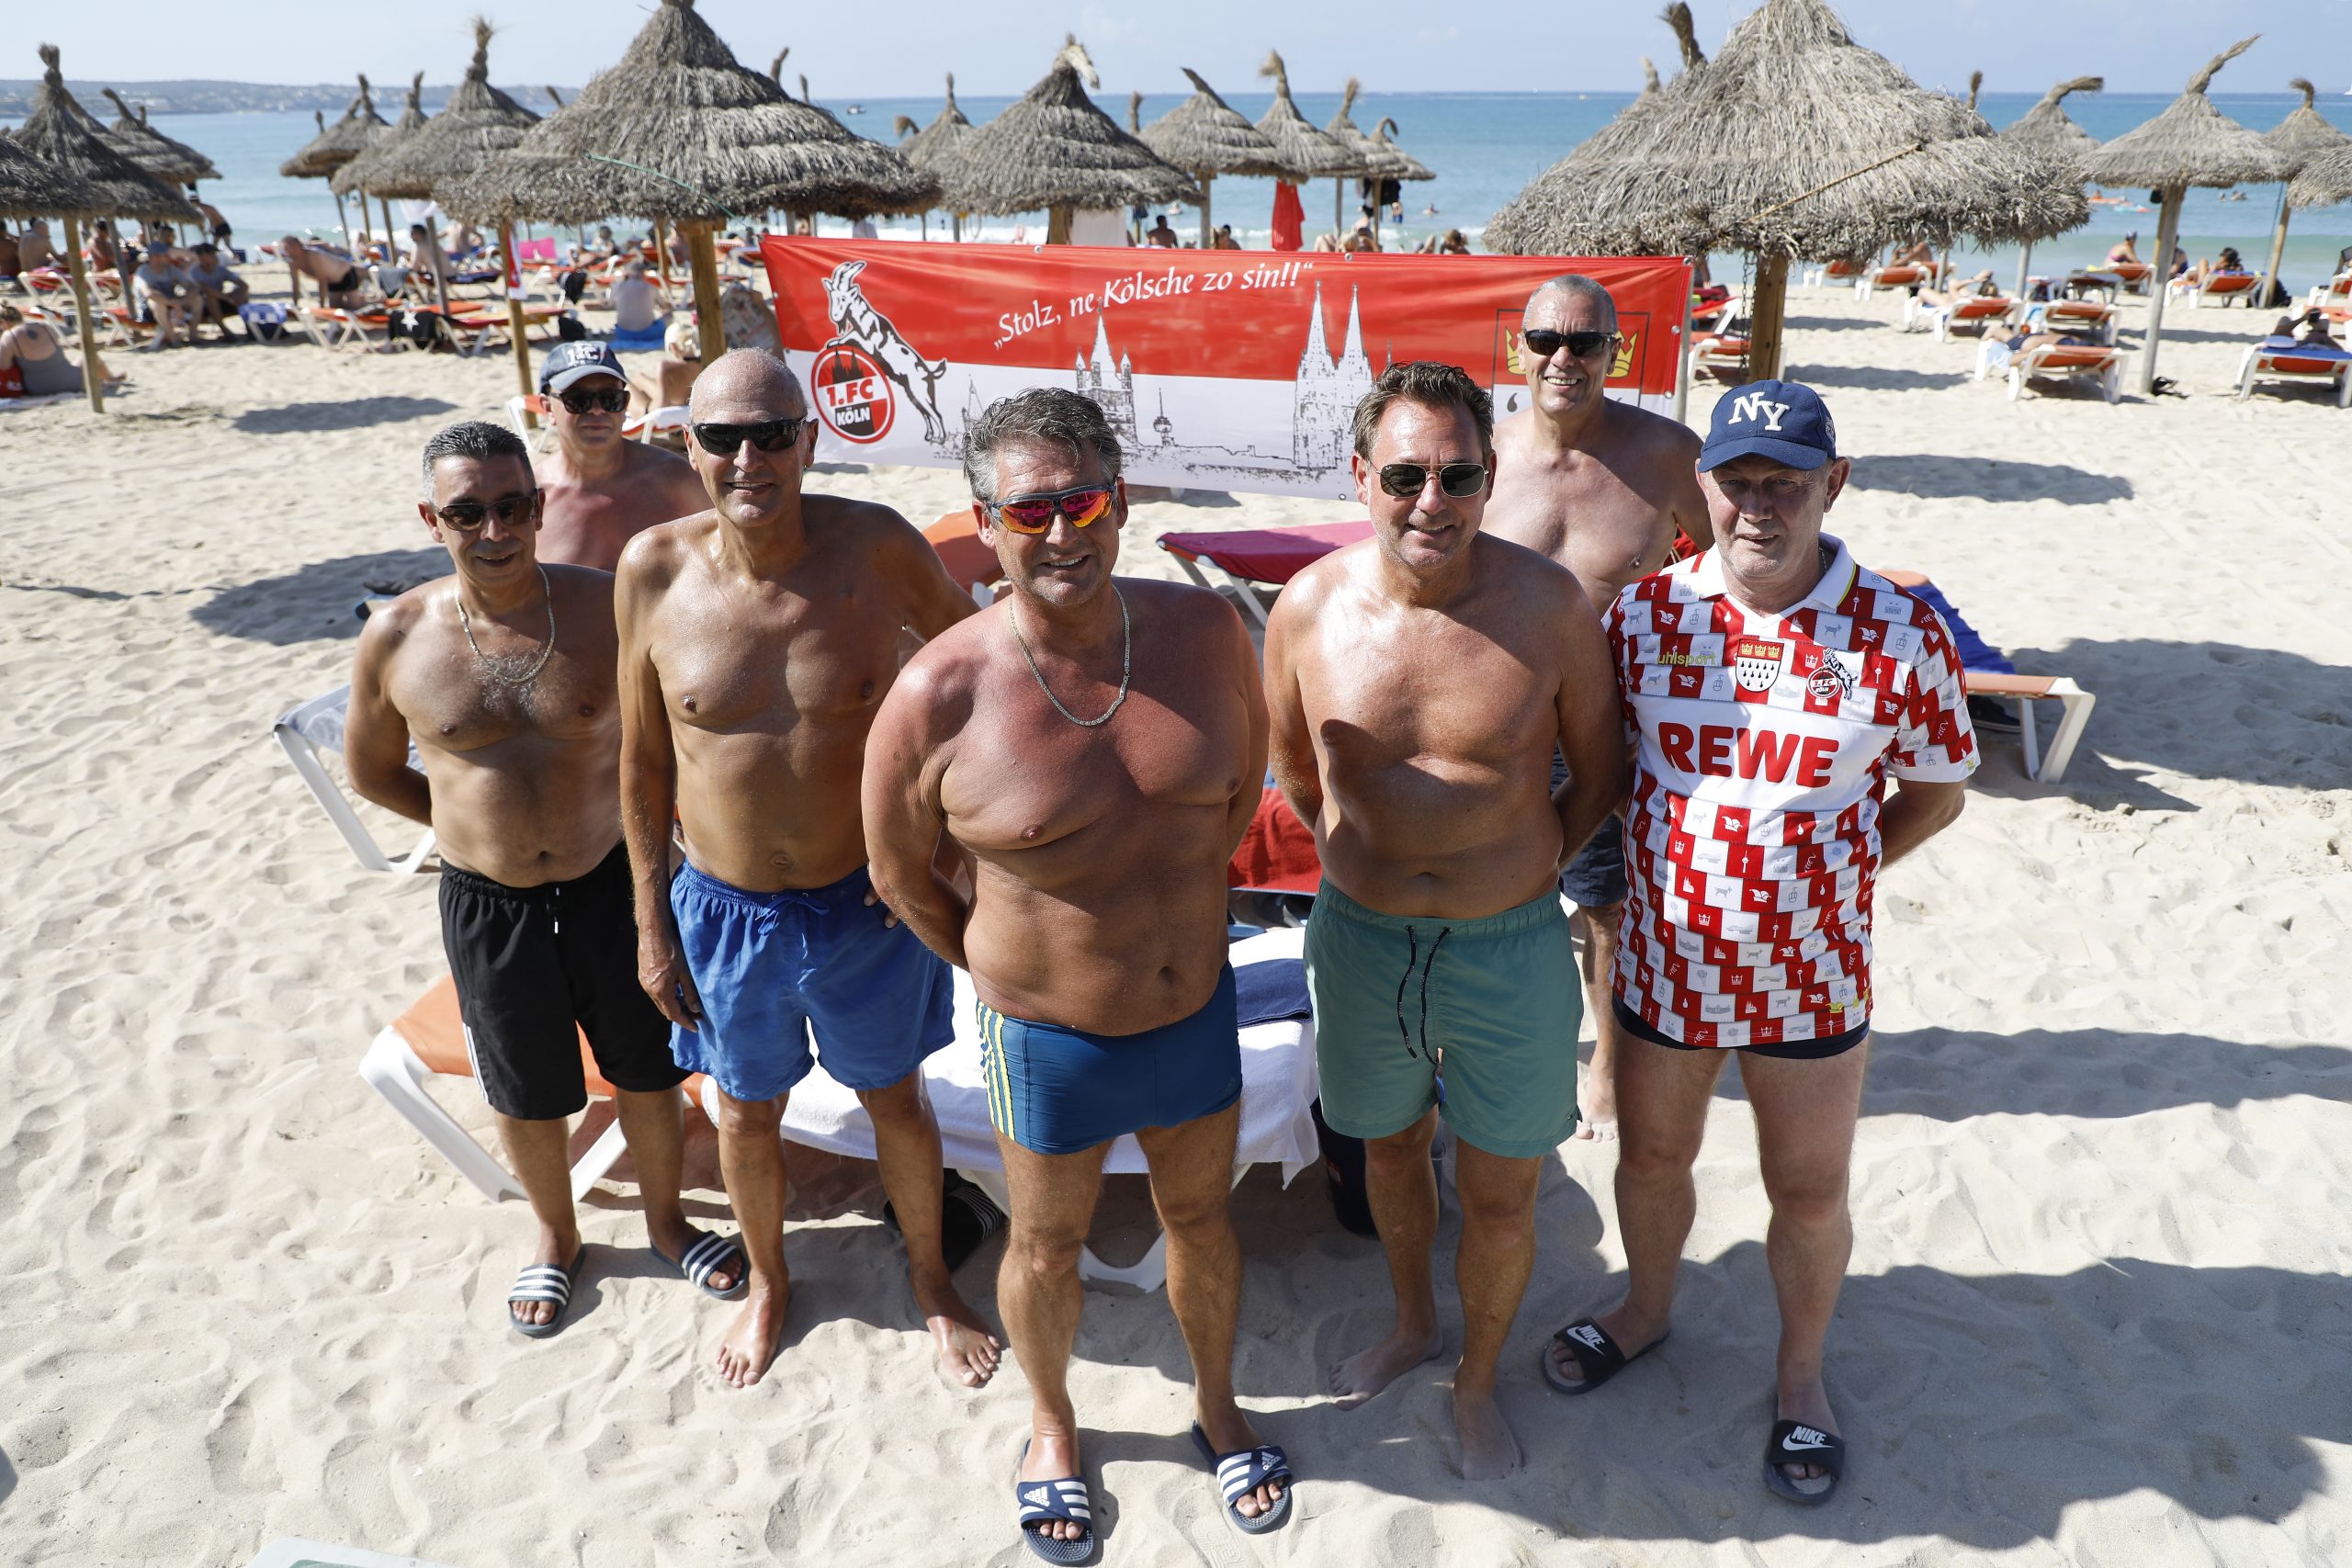 Franko, Rene, Peter, Bernd, Stephan, Kalla und Herbert aus Köln haben sich am Strand von Arenal zum Gruppenfoto aufgestellt.